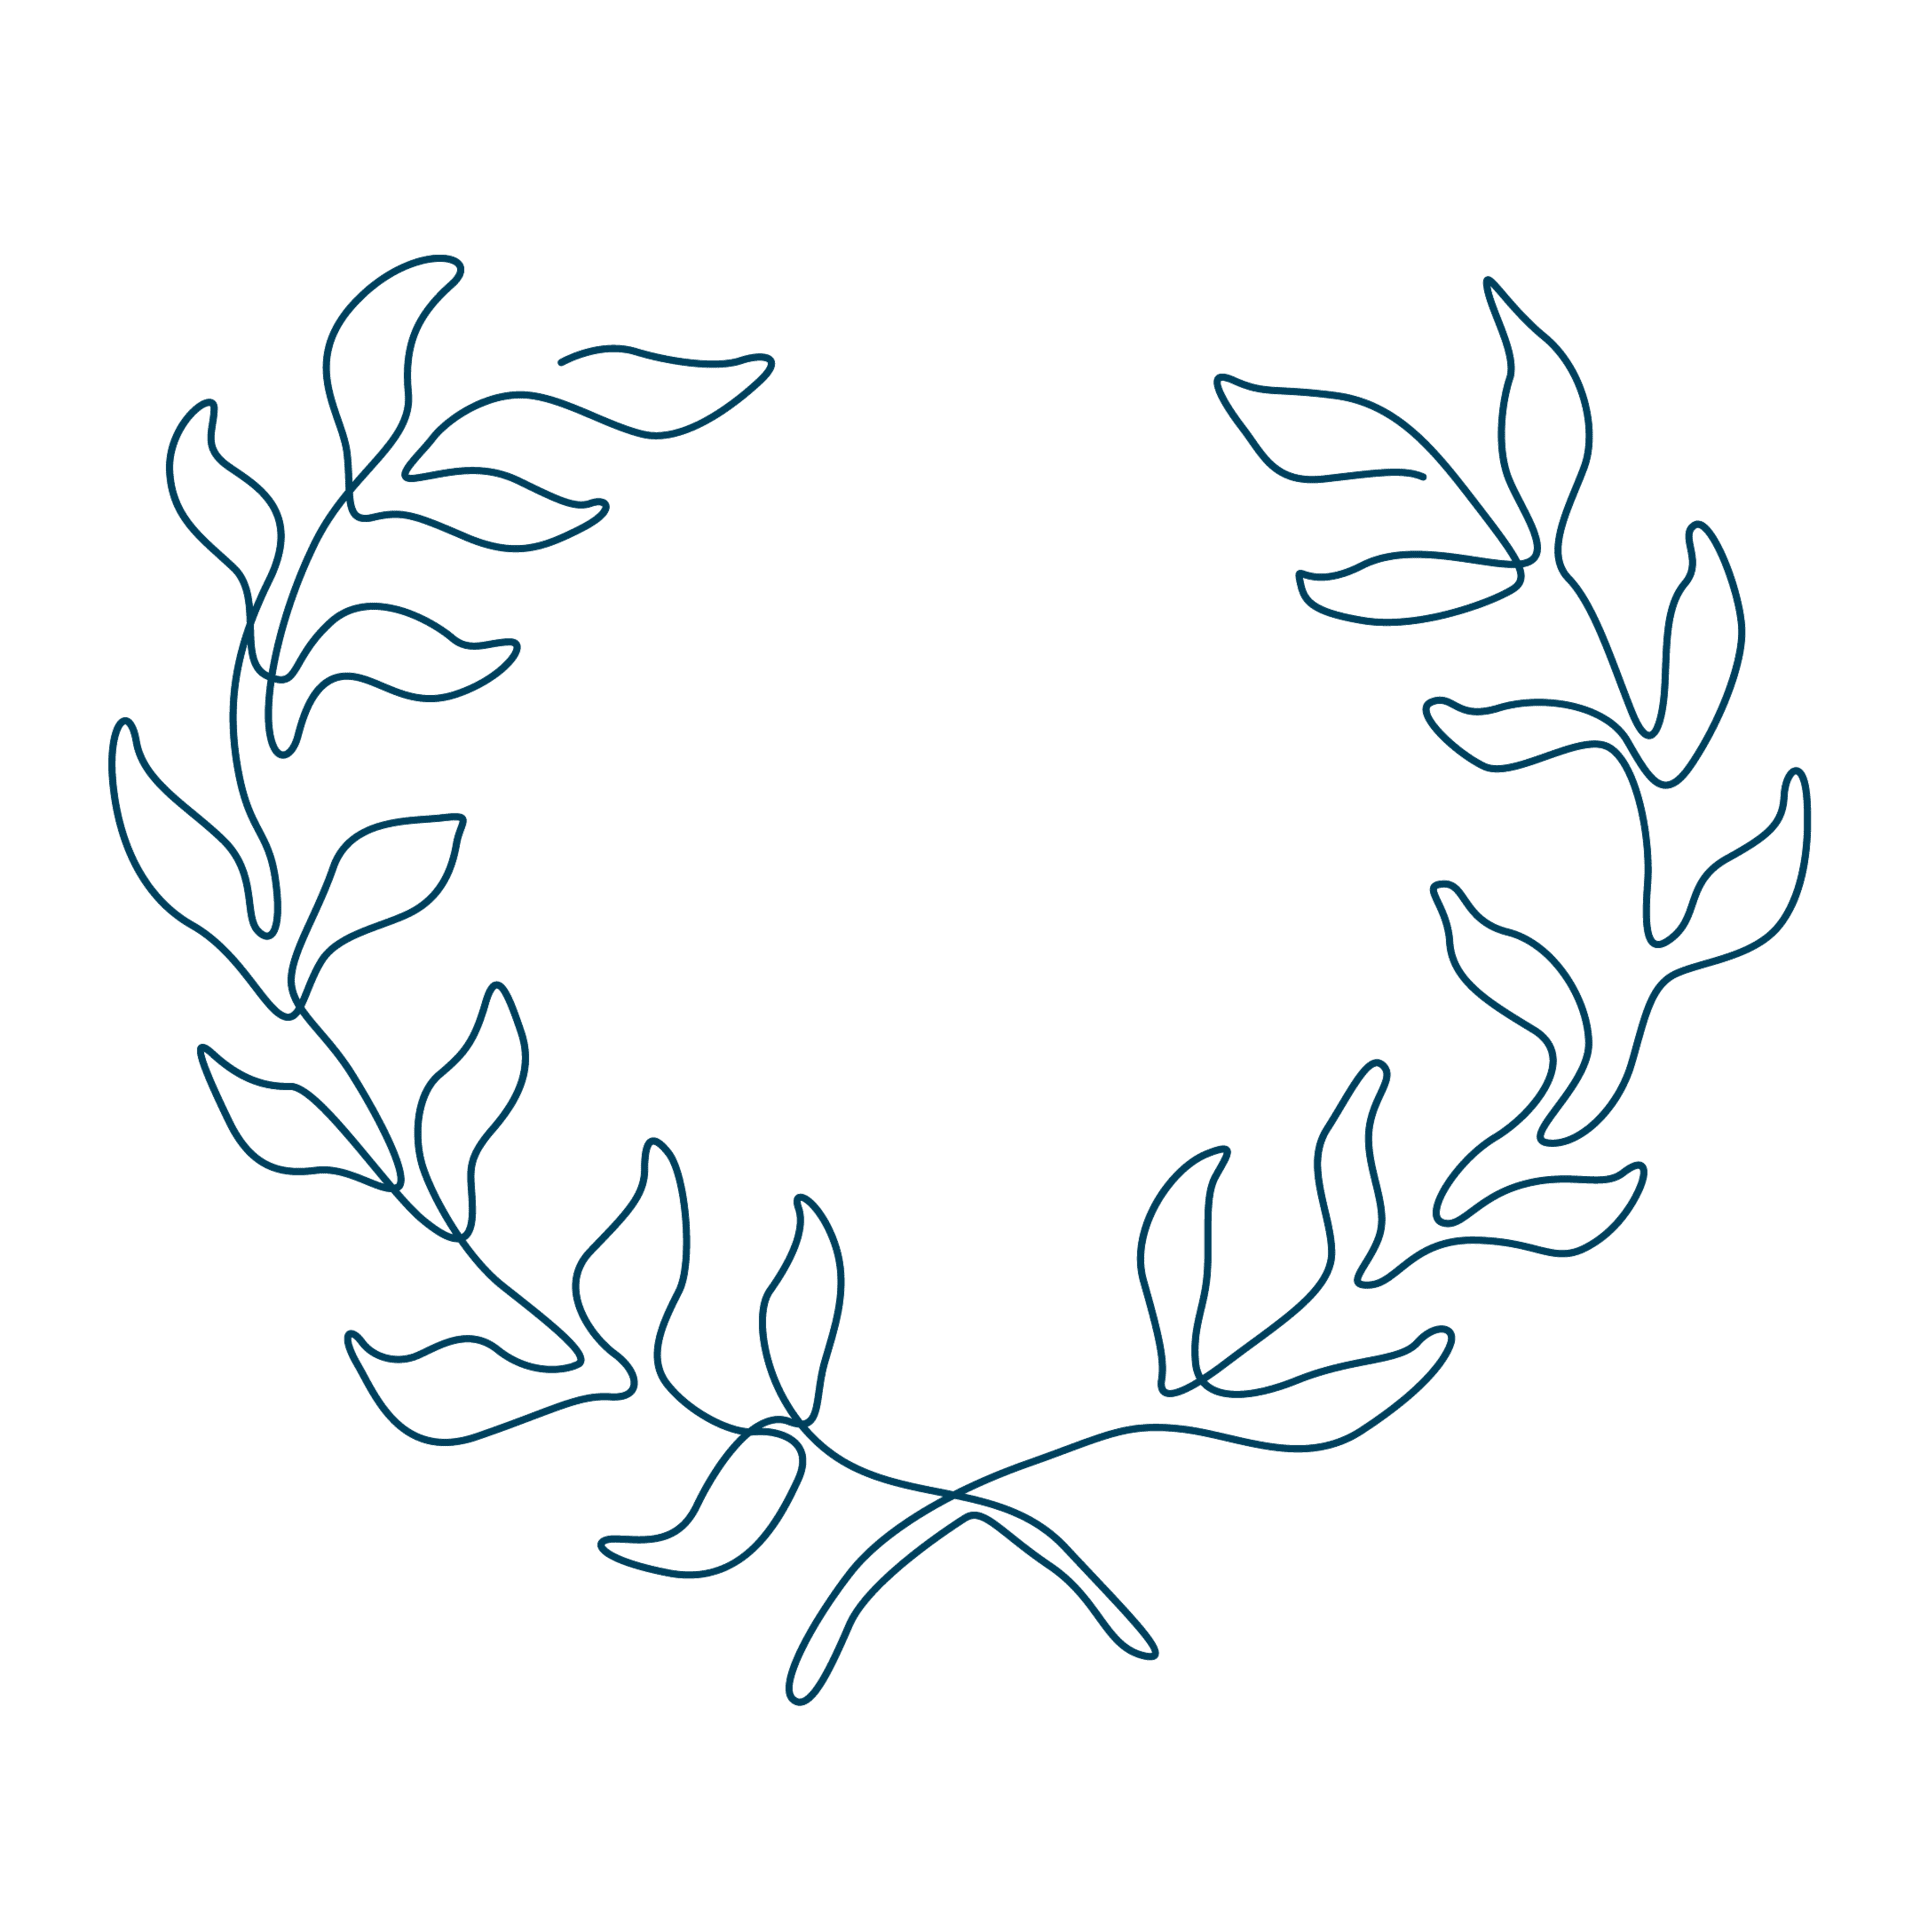 Die Line-Art-Zeichnung von zwei Zweigen mit Blättern steht für den Triathlon